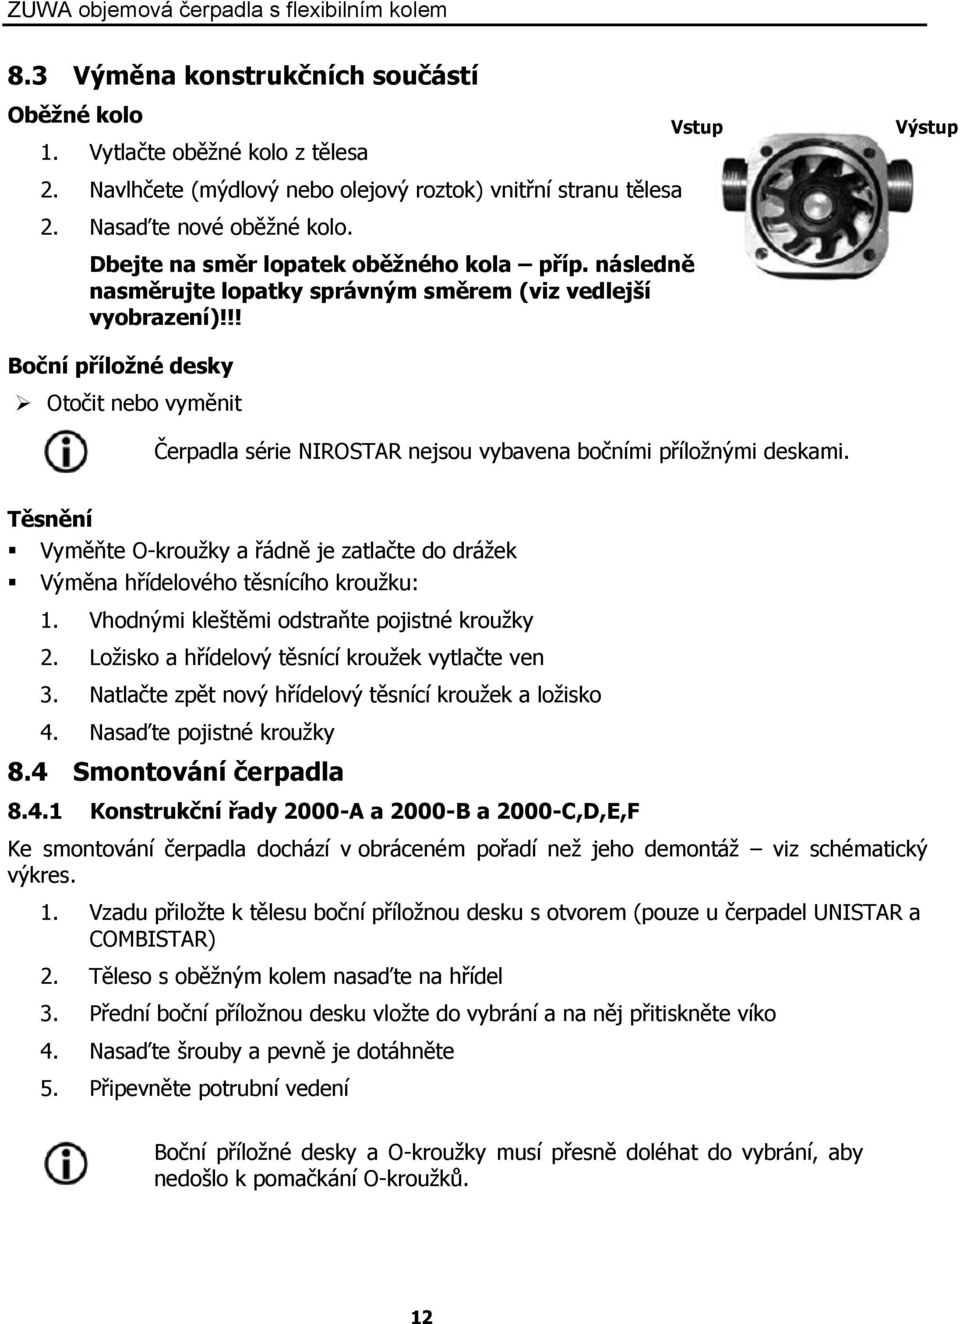 Návod k obsluze Objemová čerpadla s flexibilním kolem - PDF Free Download